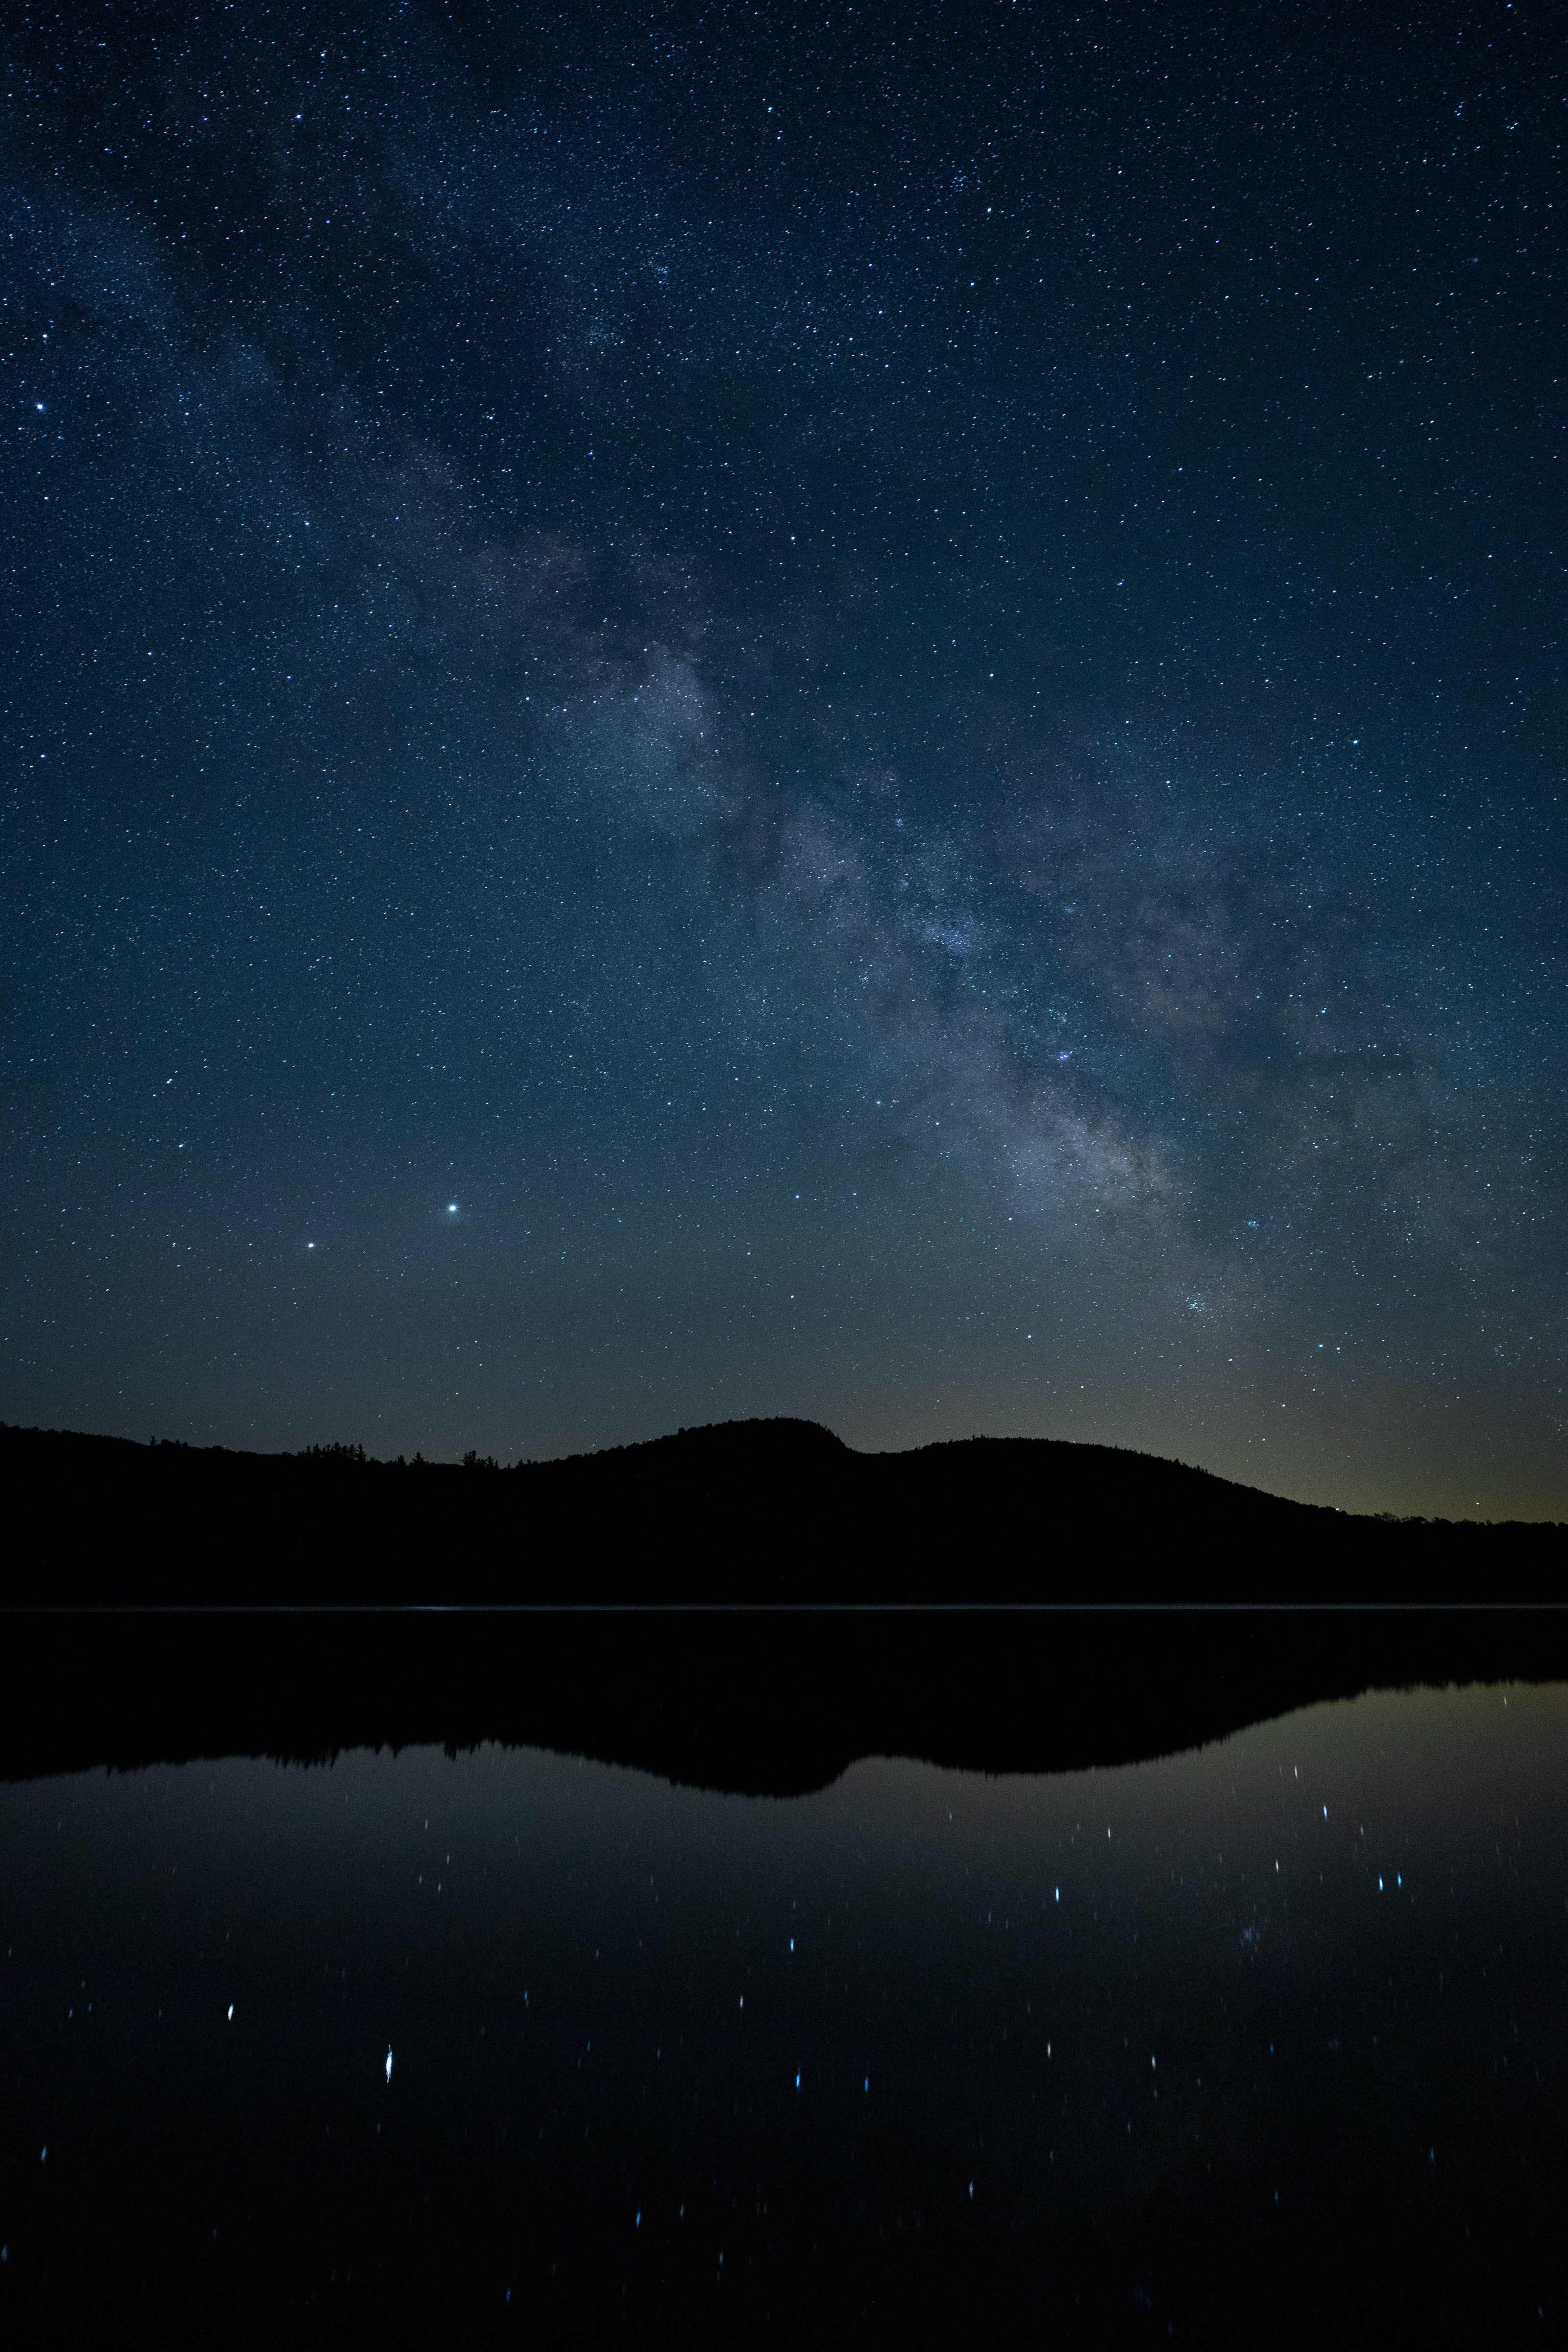 Free HD starry sky, nature, night, reflection, hills, nebula